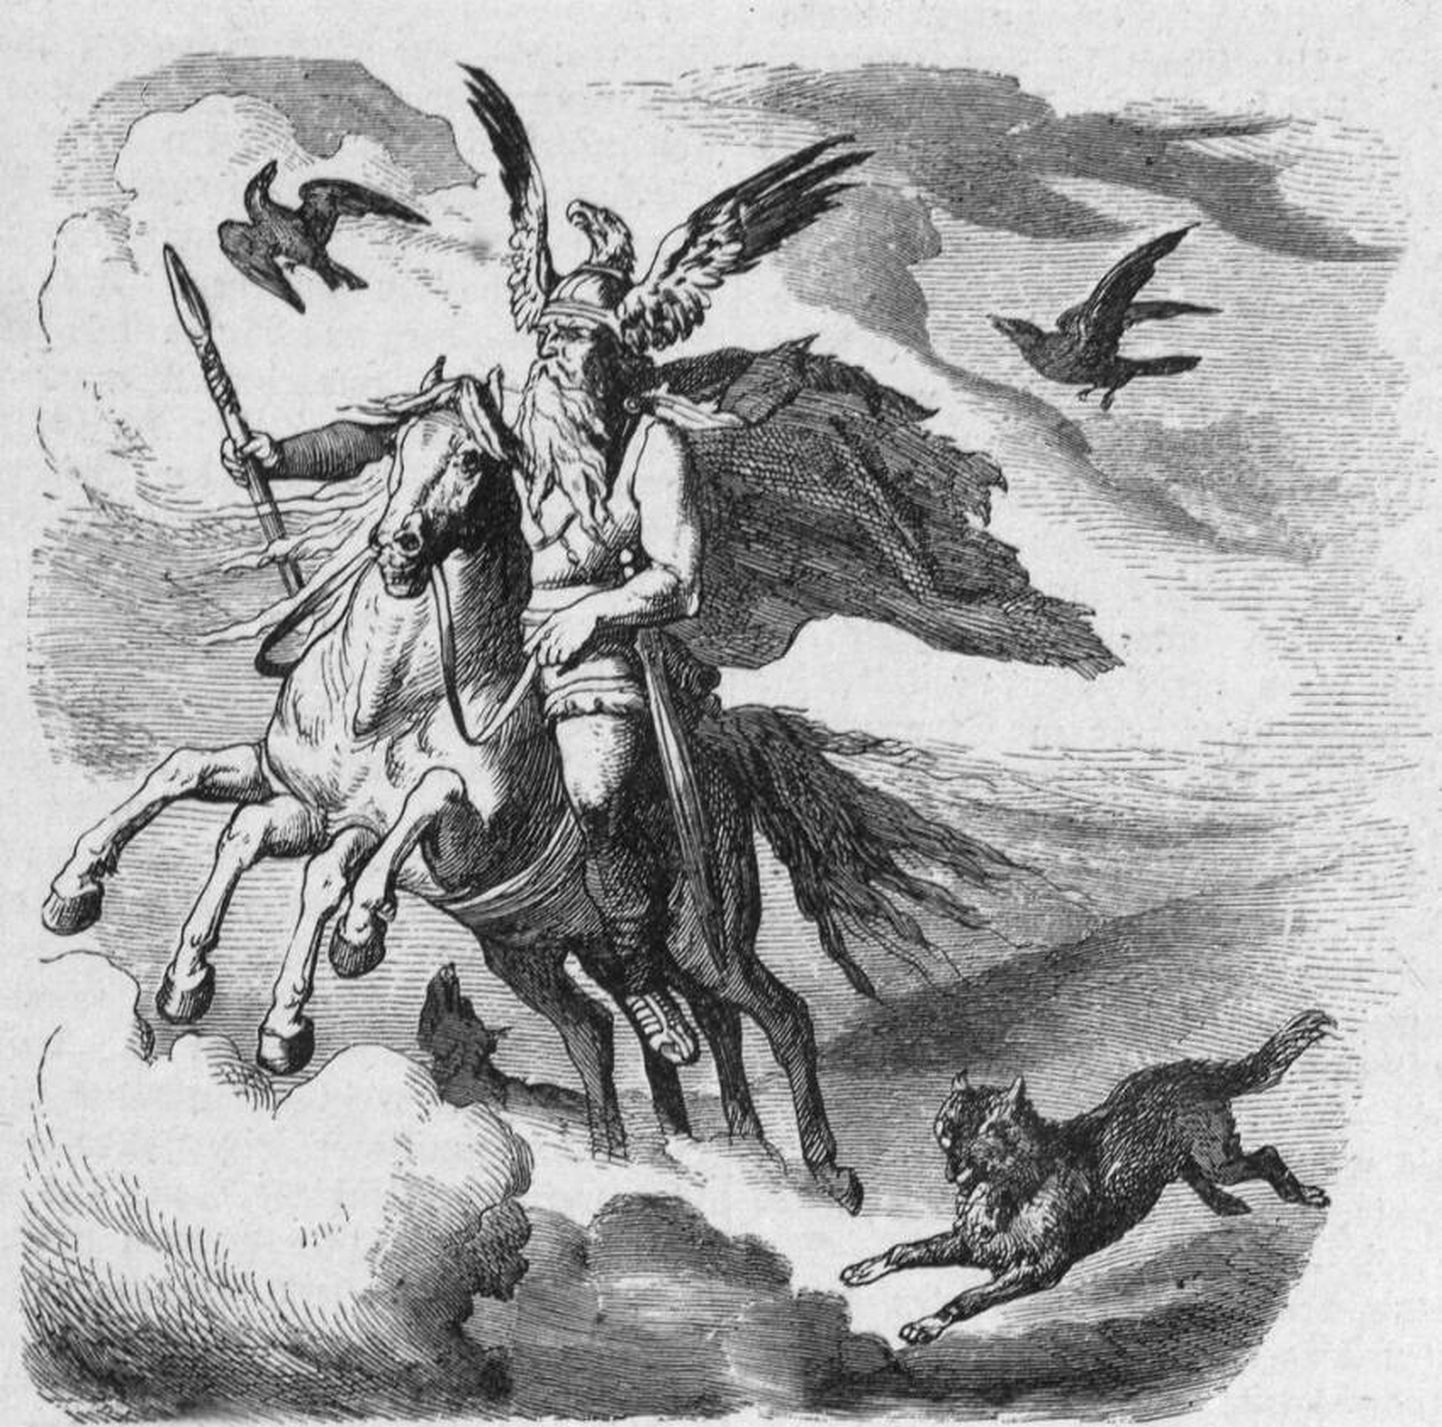 Viikingid uskusid, et jumalate pealik Odin lendas sel ajal oma kaheksajalgse hobuse Sleipneri seljas öötaevas ringi ja jagas kingitusi.